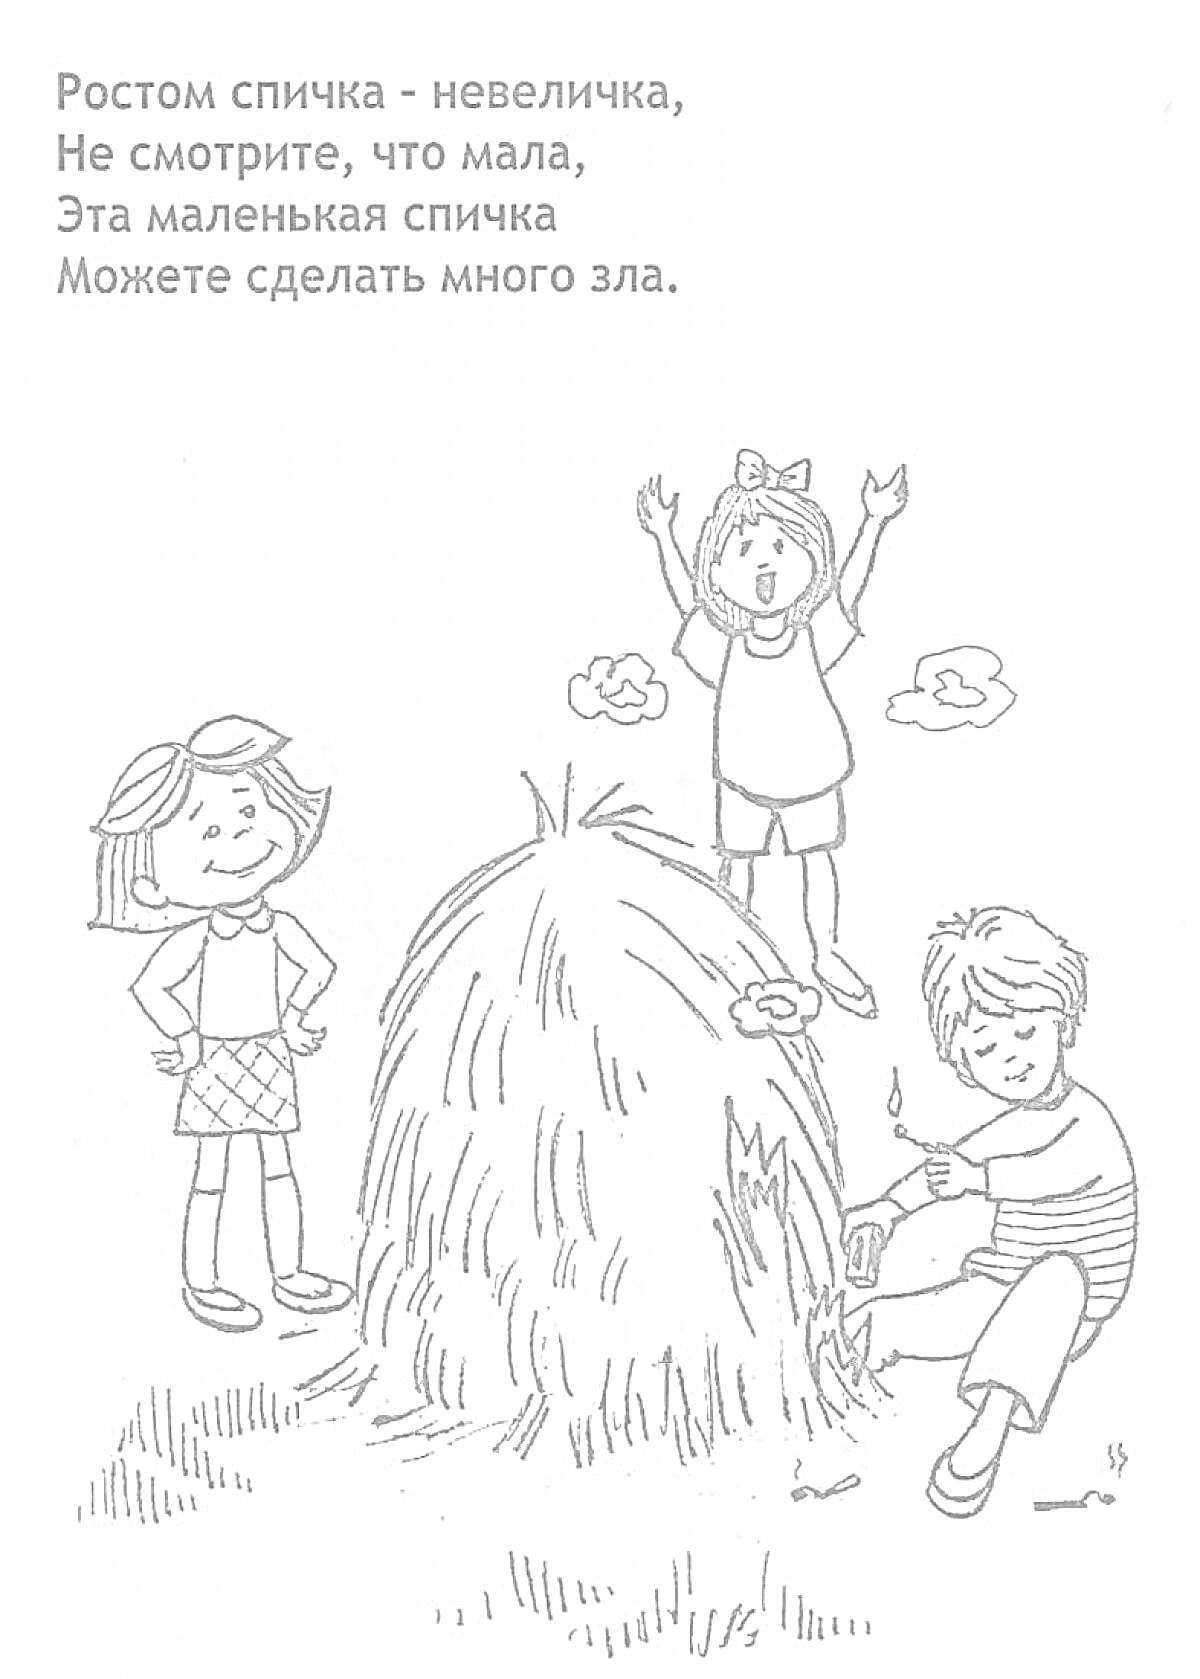 Раскраска Дети возле костра из сена, мальчик пытается поджечь сено спичками, девочка с заколками смотрит, другая девочка машет руками